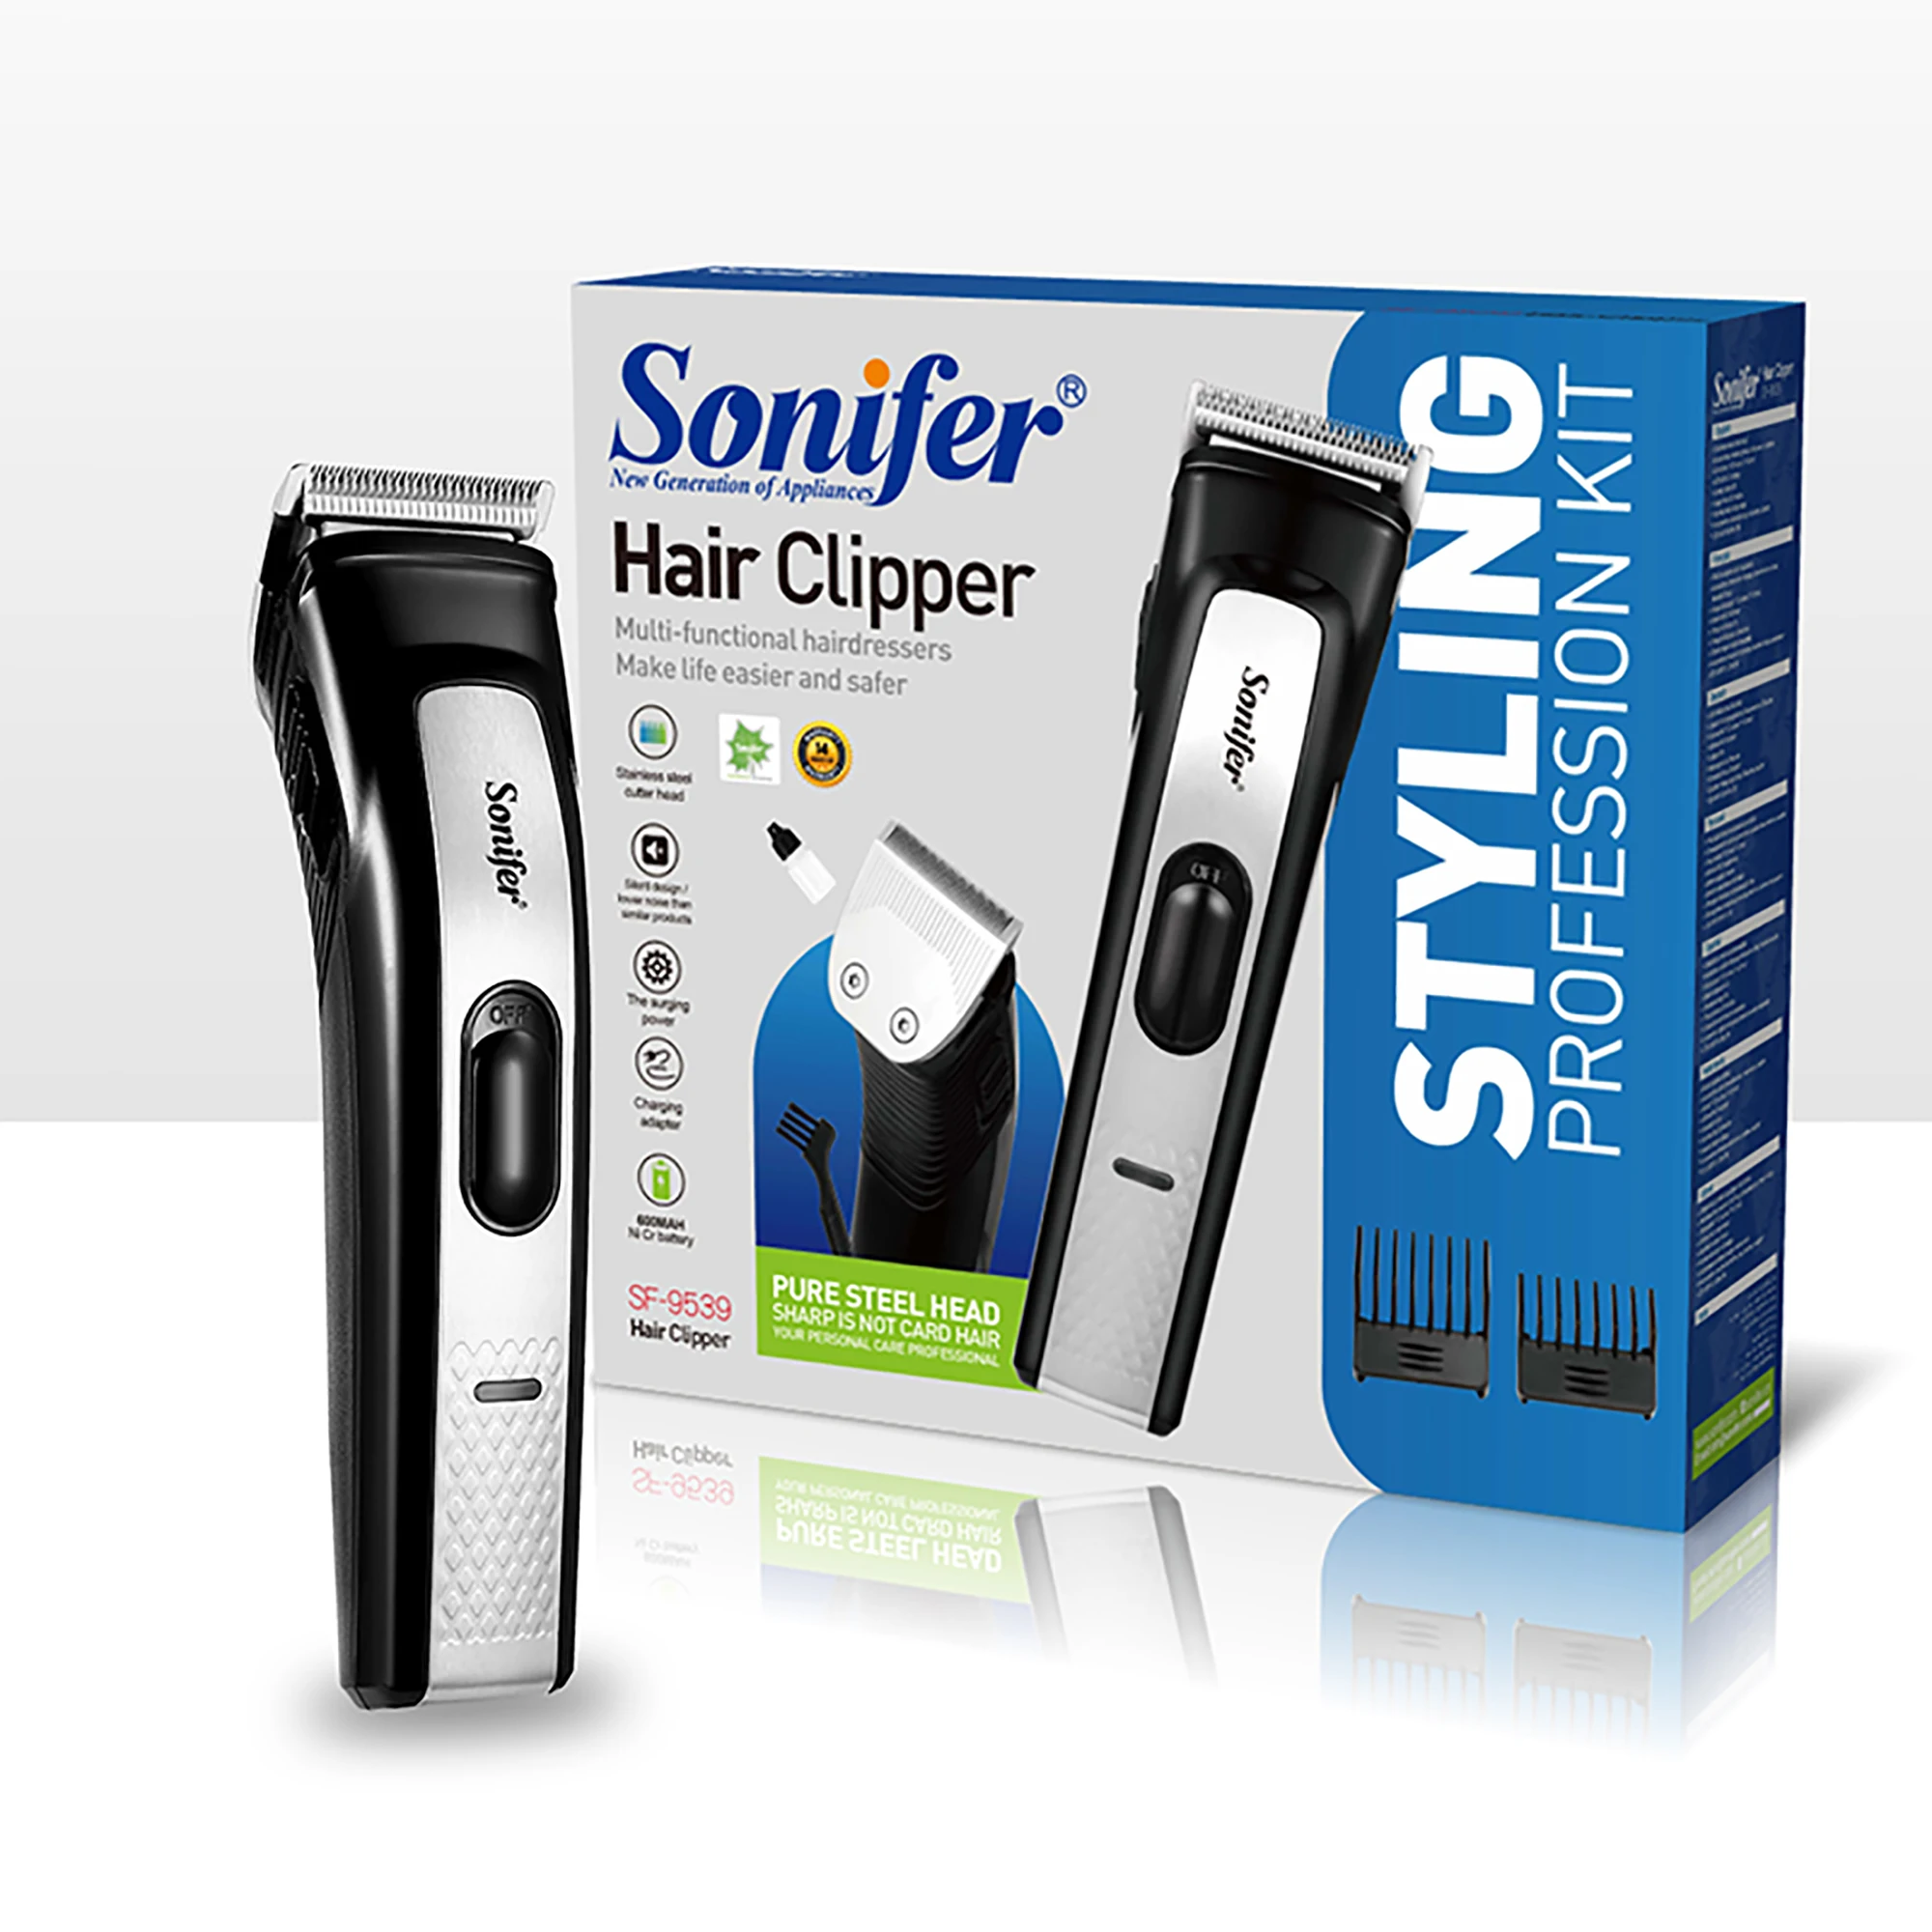 

Бритвенный станок для мужчин, Беспроводная Машинка для стрижки волос, триммер для бороды, беспроводной парикмахерский аппарат Sonifer SF9539